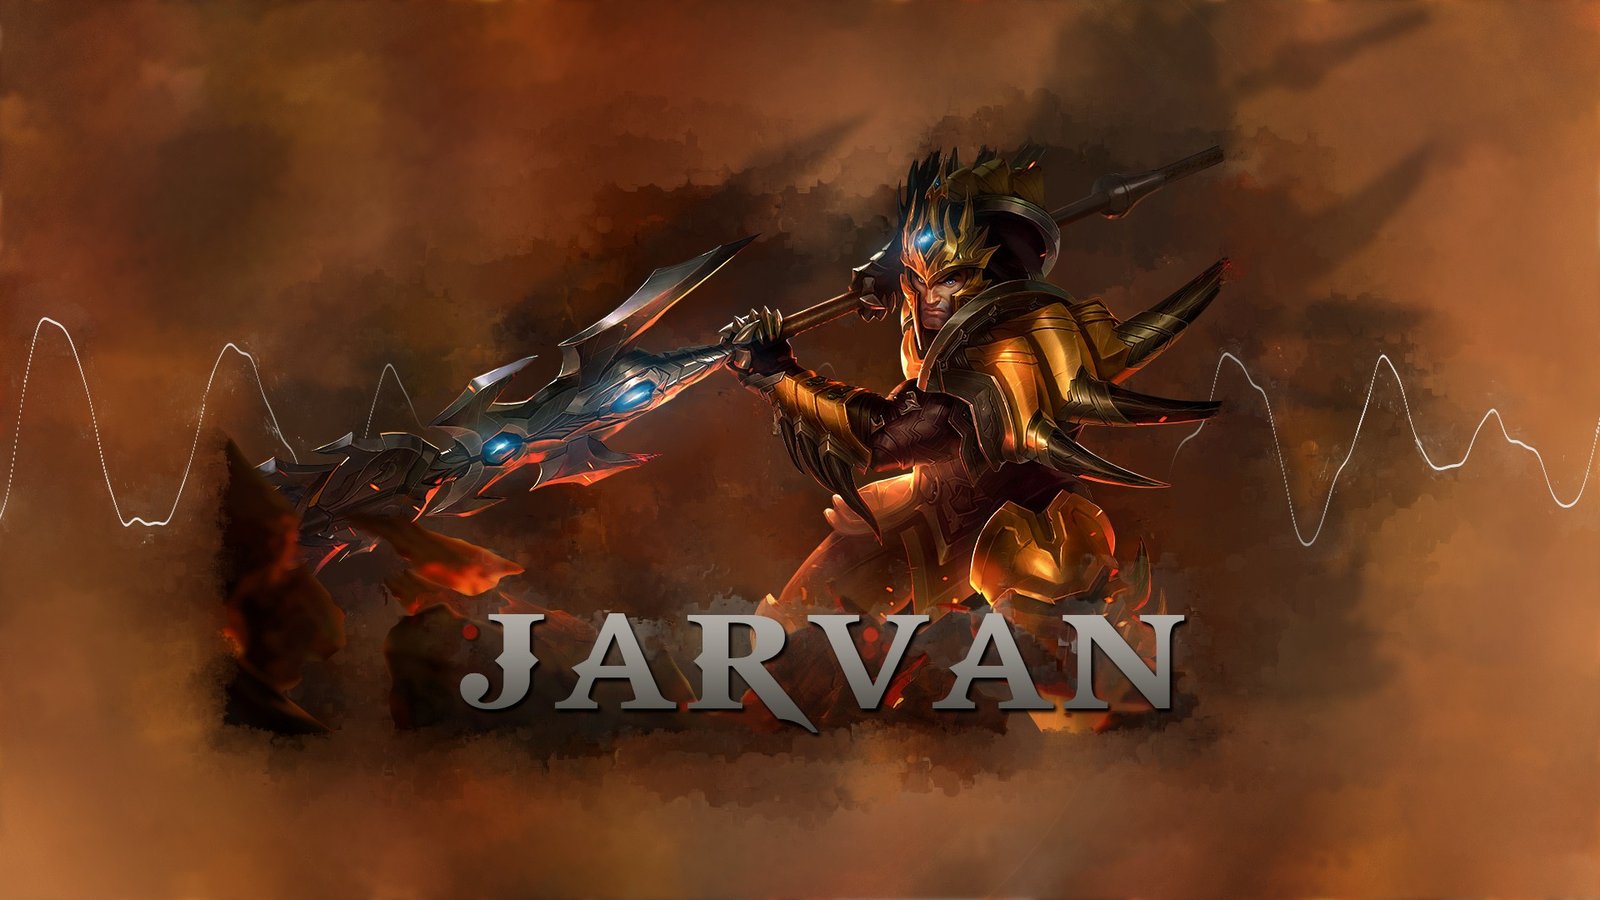 Jarvan IV by MiniPotato HD Wallpaper Fan Art Artwork League of Legends lol